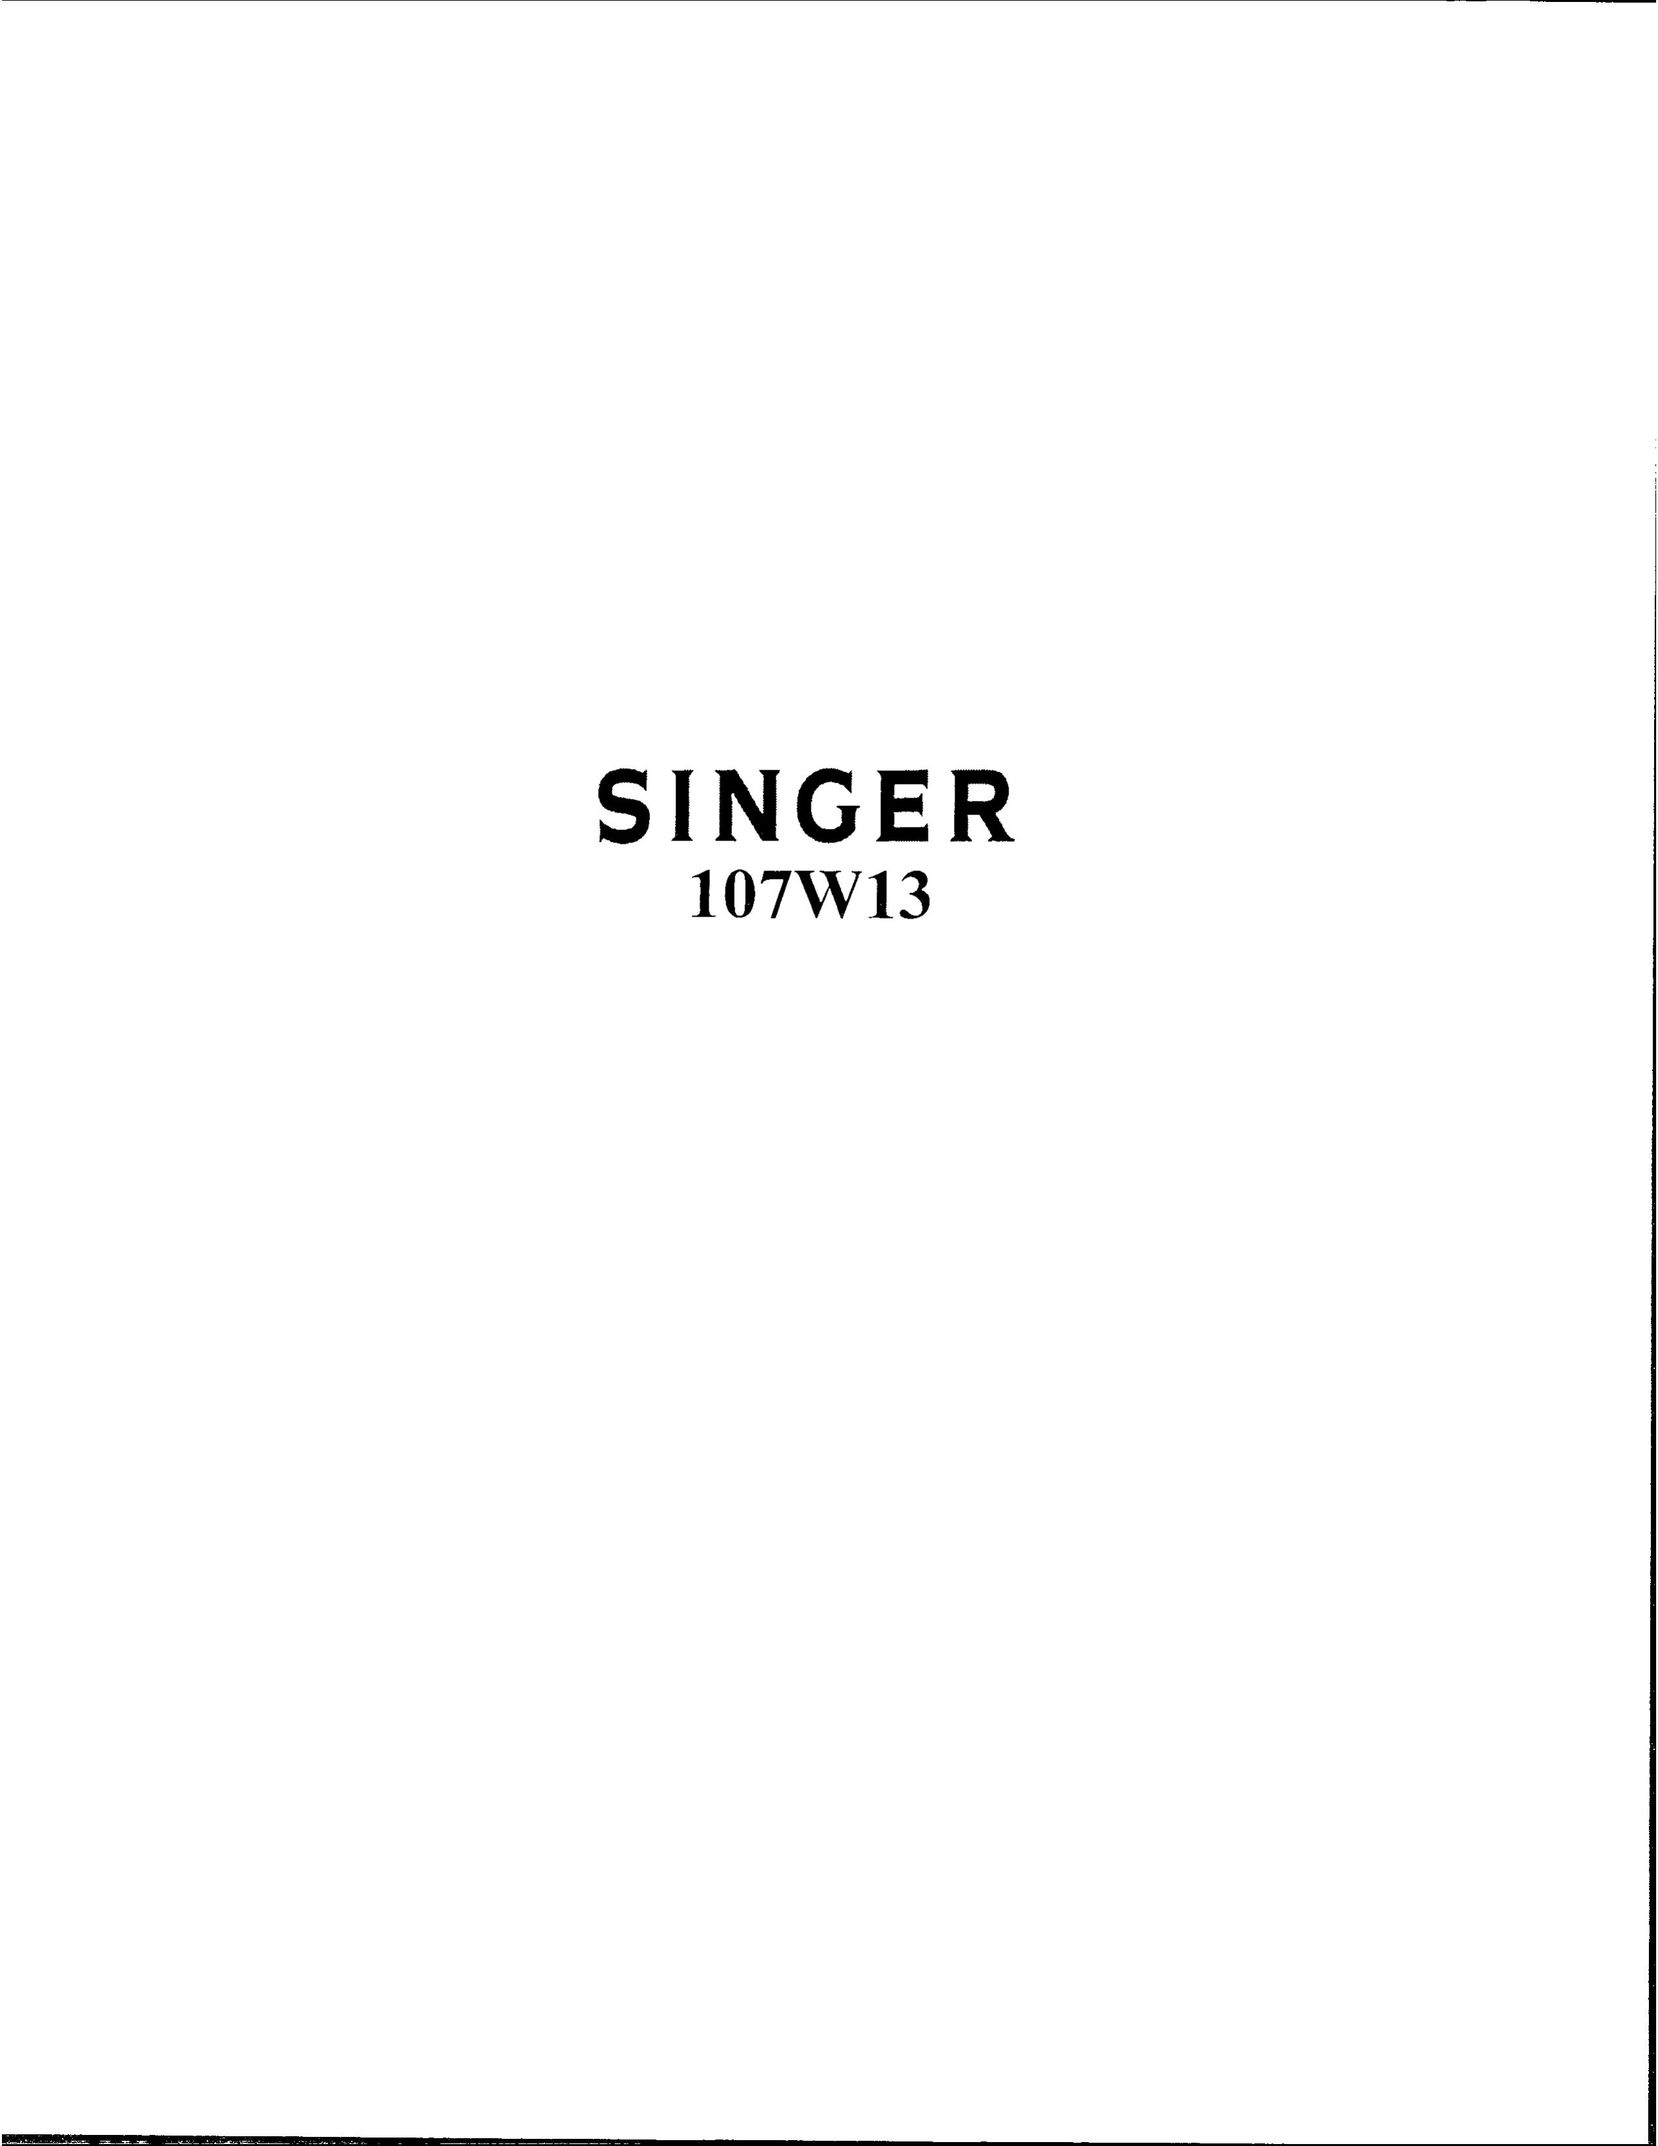 Singer 107W13 Sewing Machine User Manual